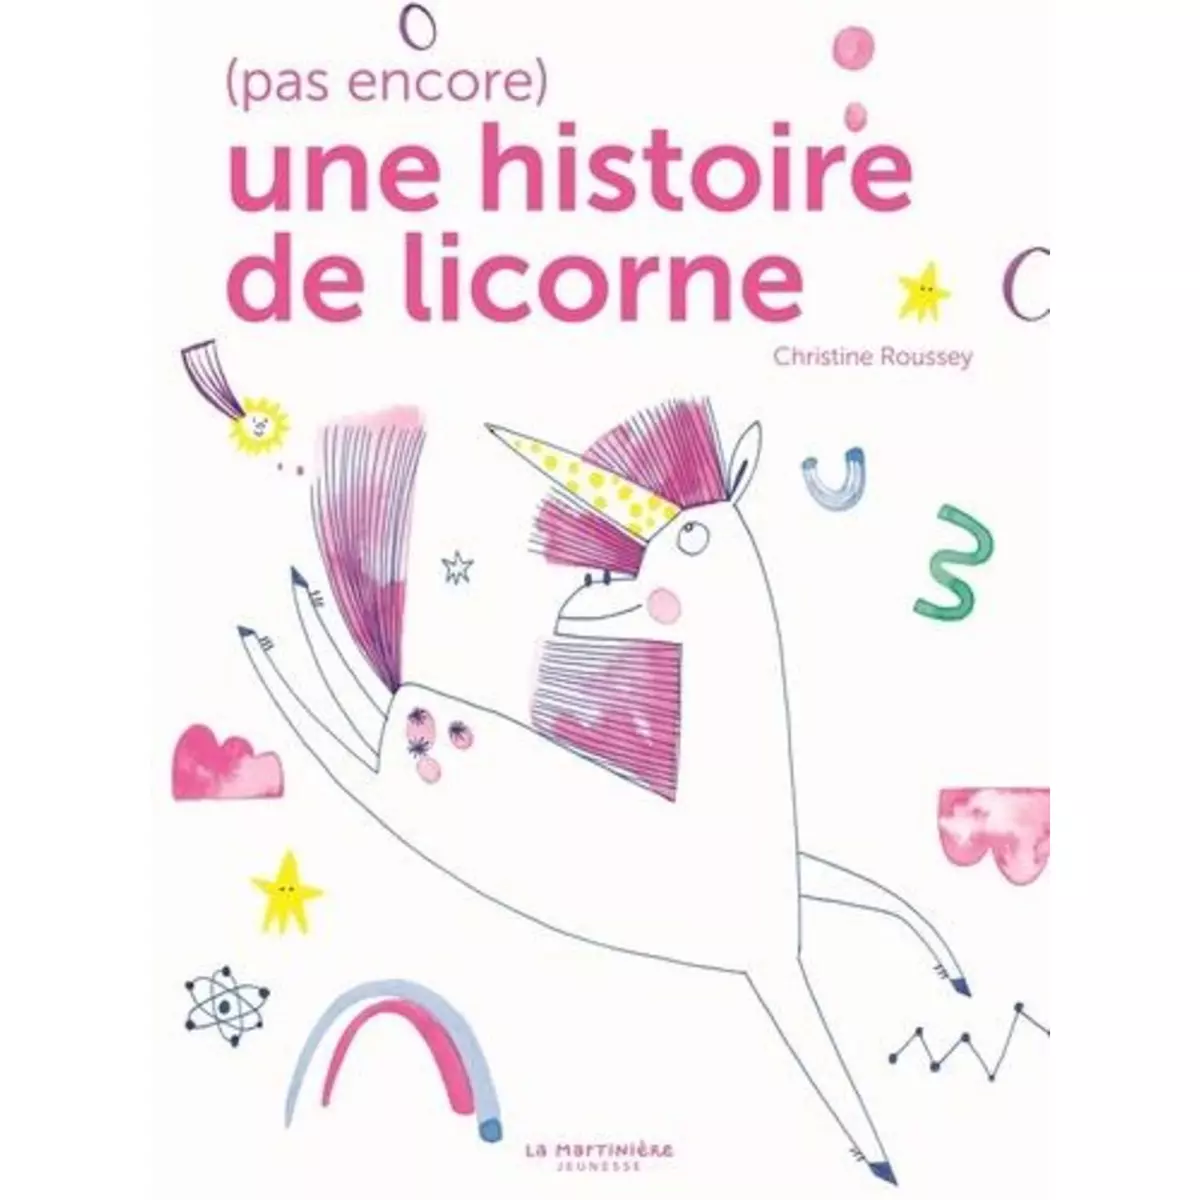  (PAS ENCORE) UNE HISTOIRE DE LICORNE, Roussey Christine